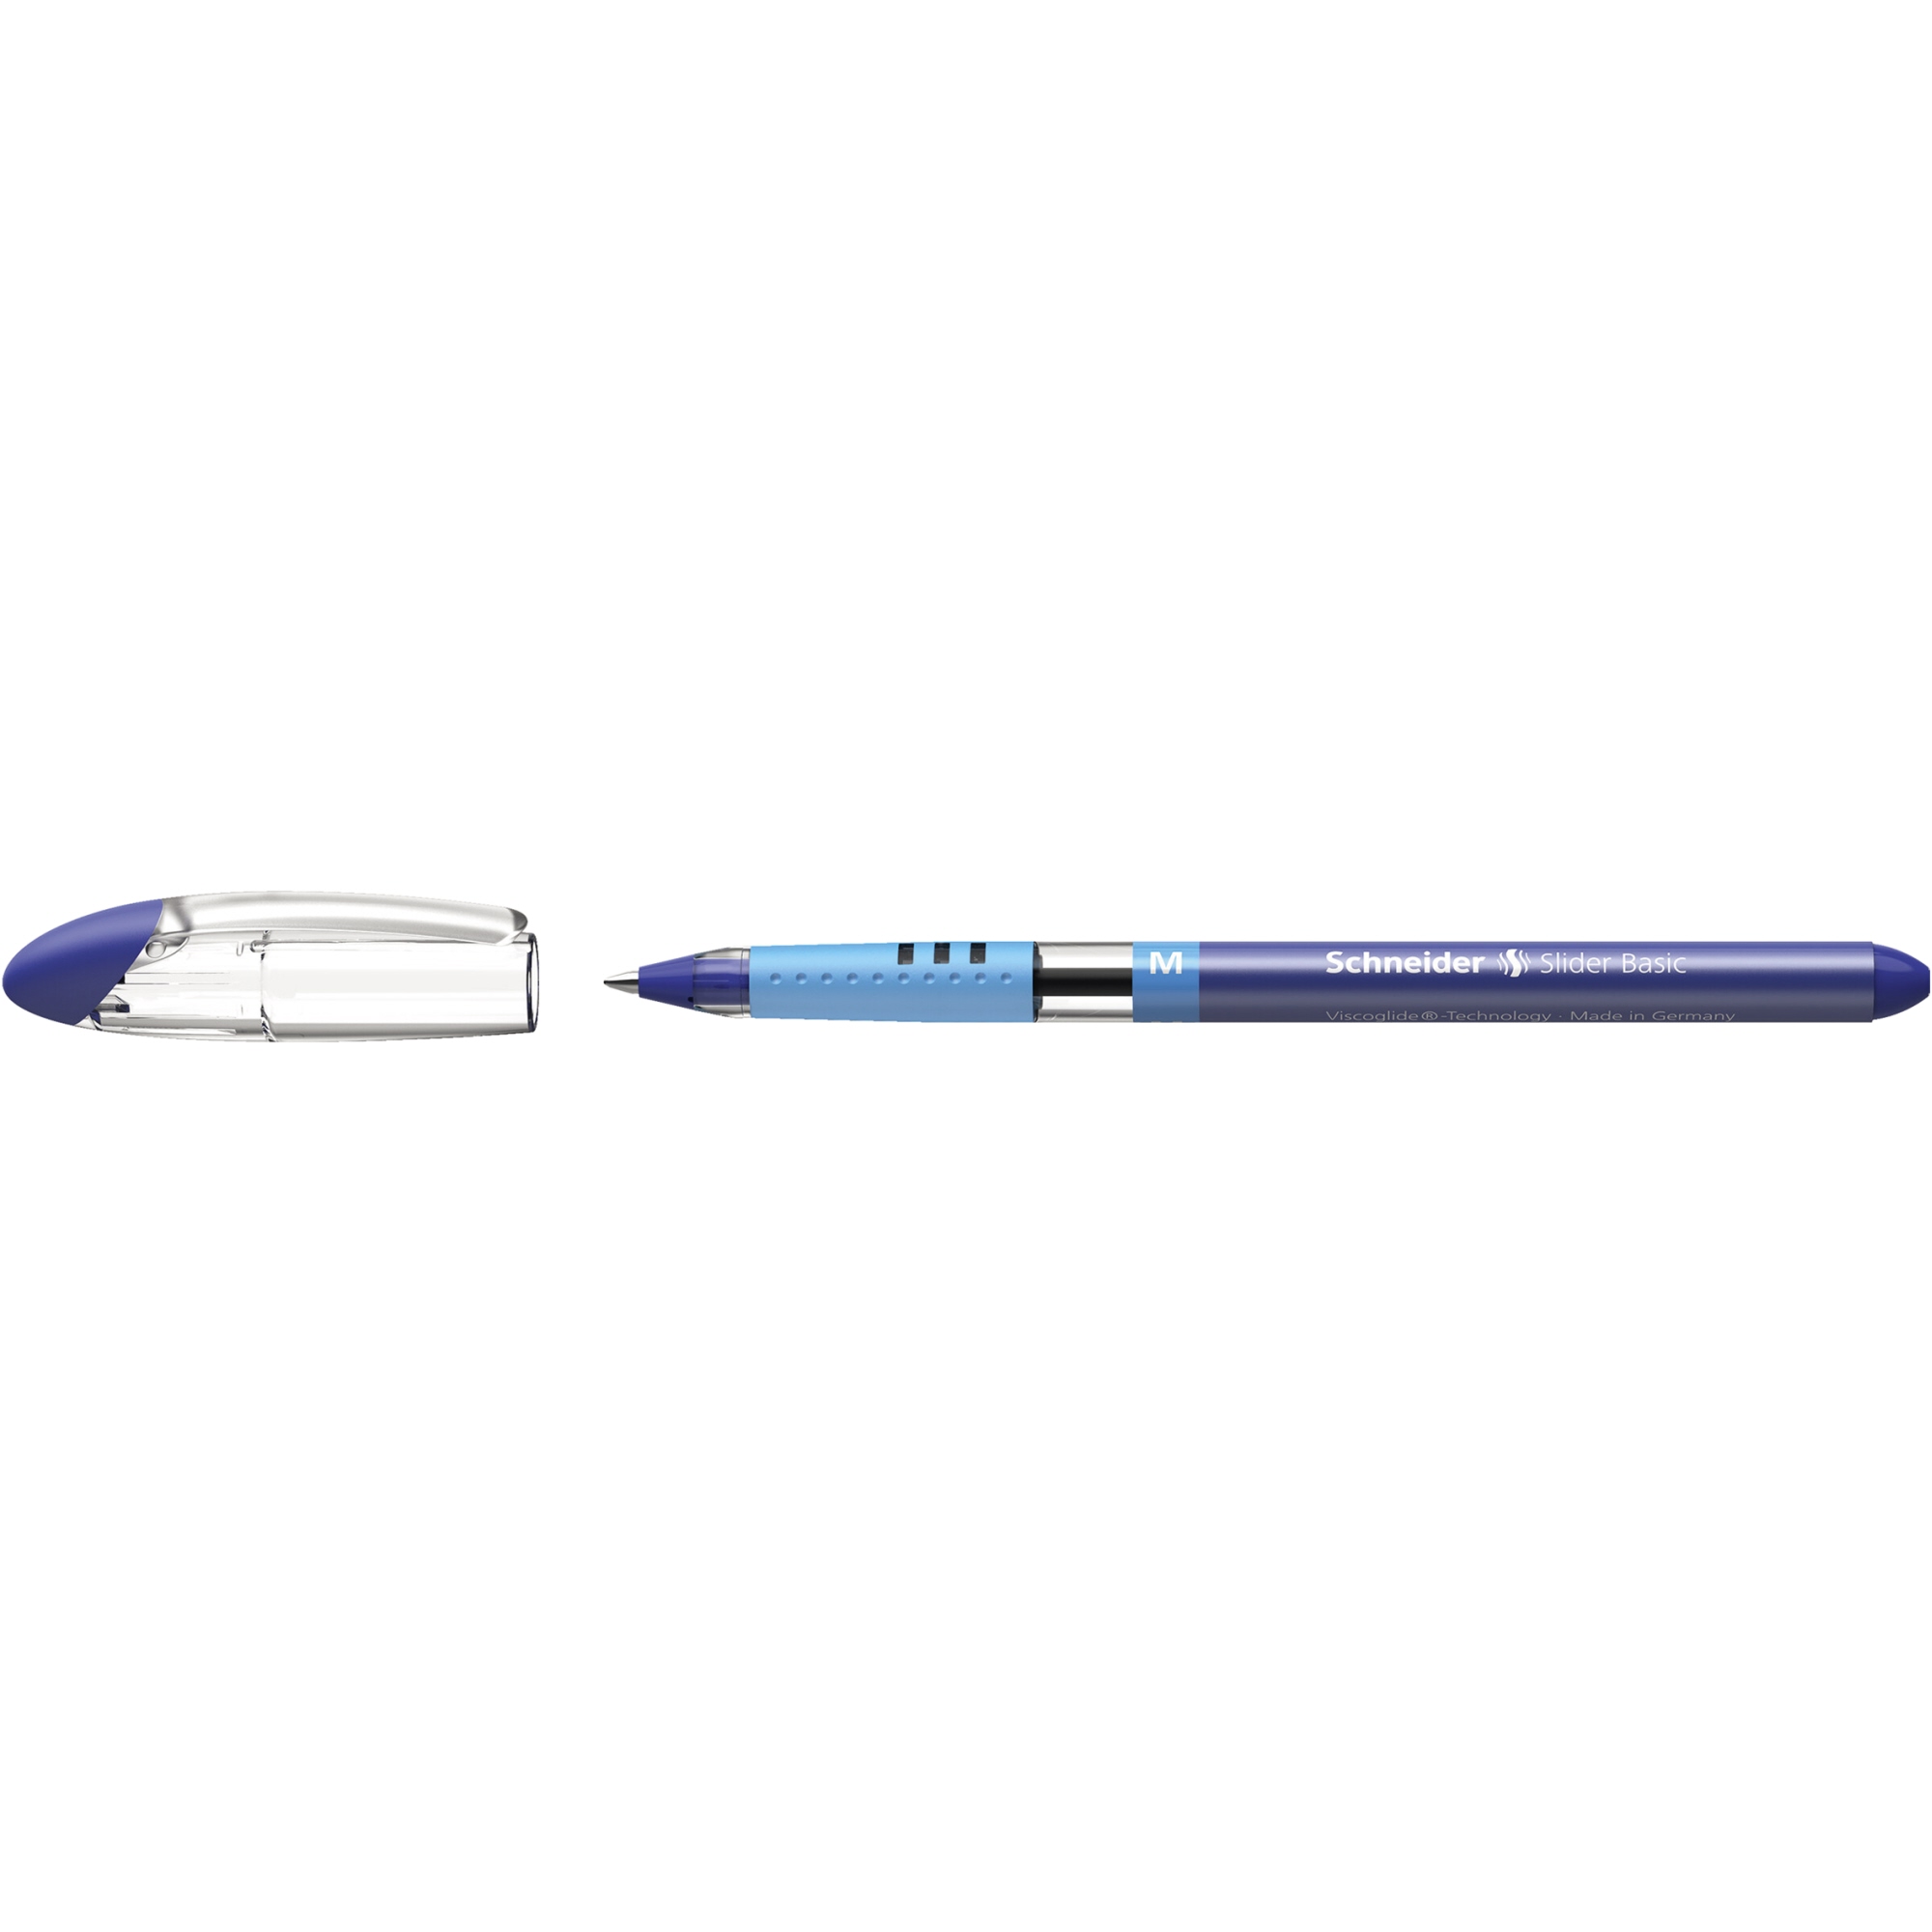 Schneider Kugelschreiber Slider Basic 0,5 mm blau